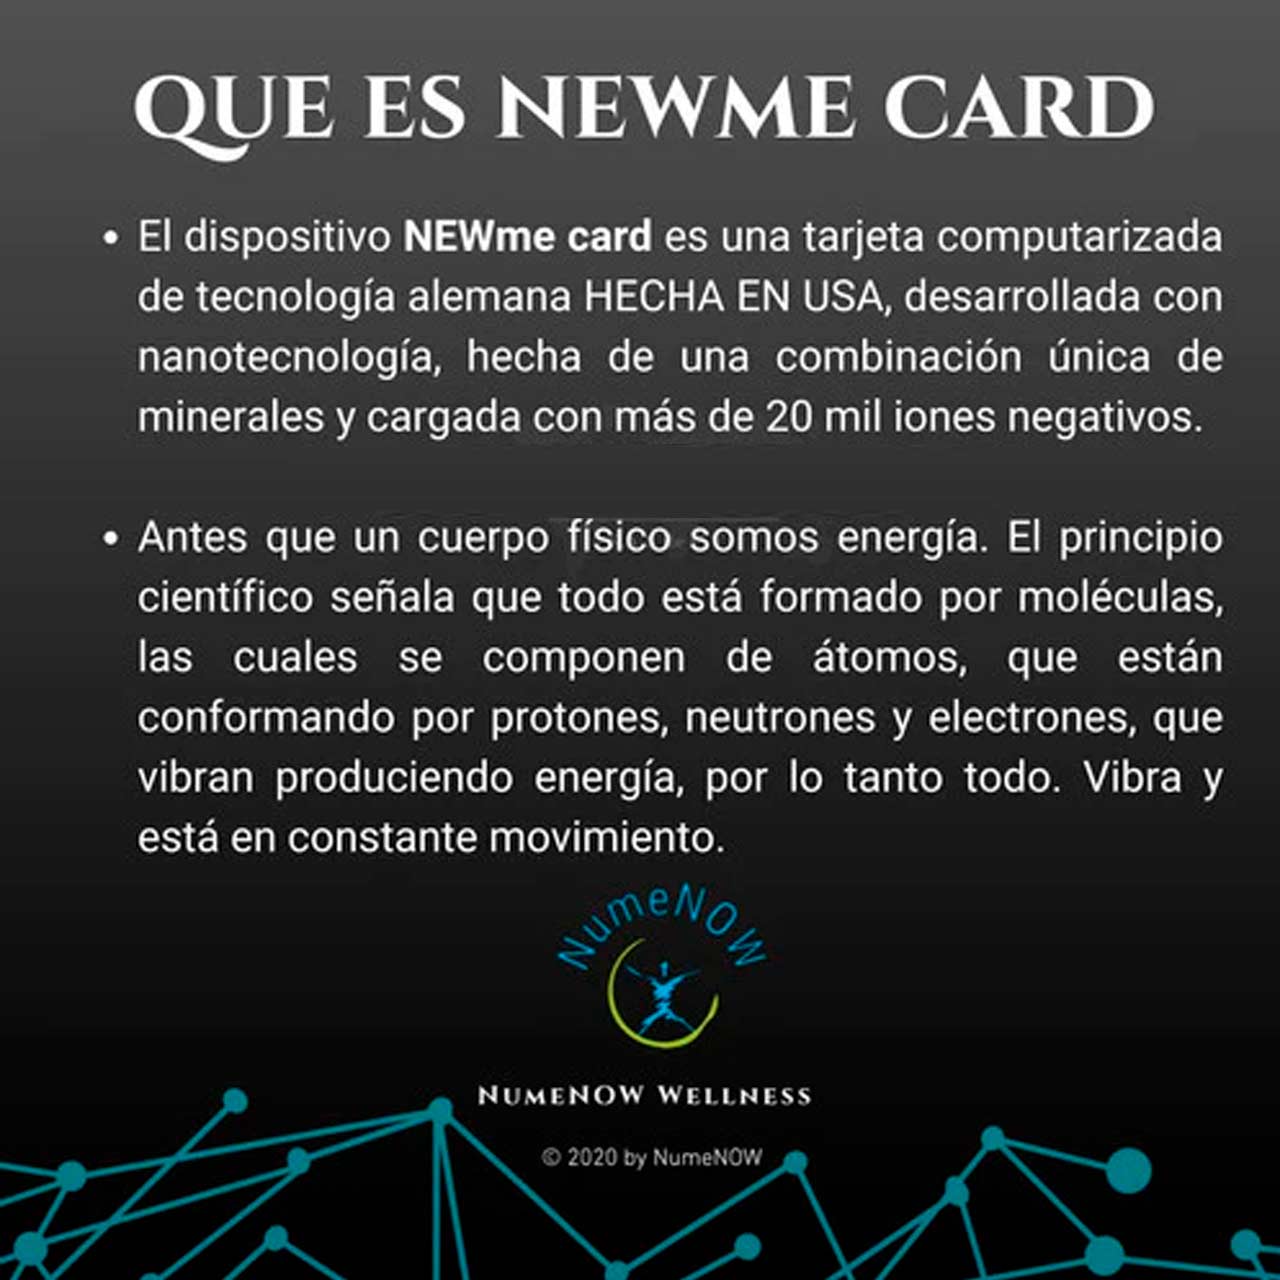 ¿Qué es NEW ME CARD?